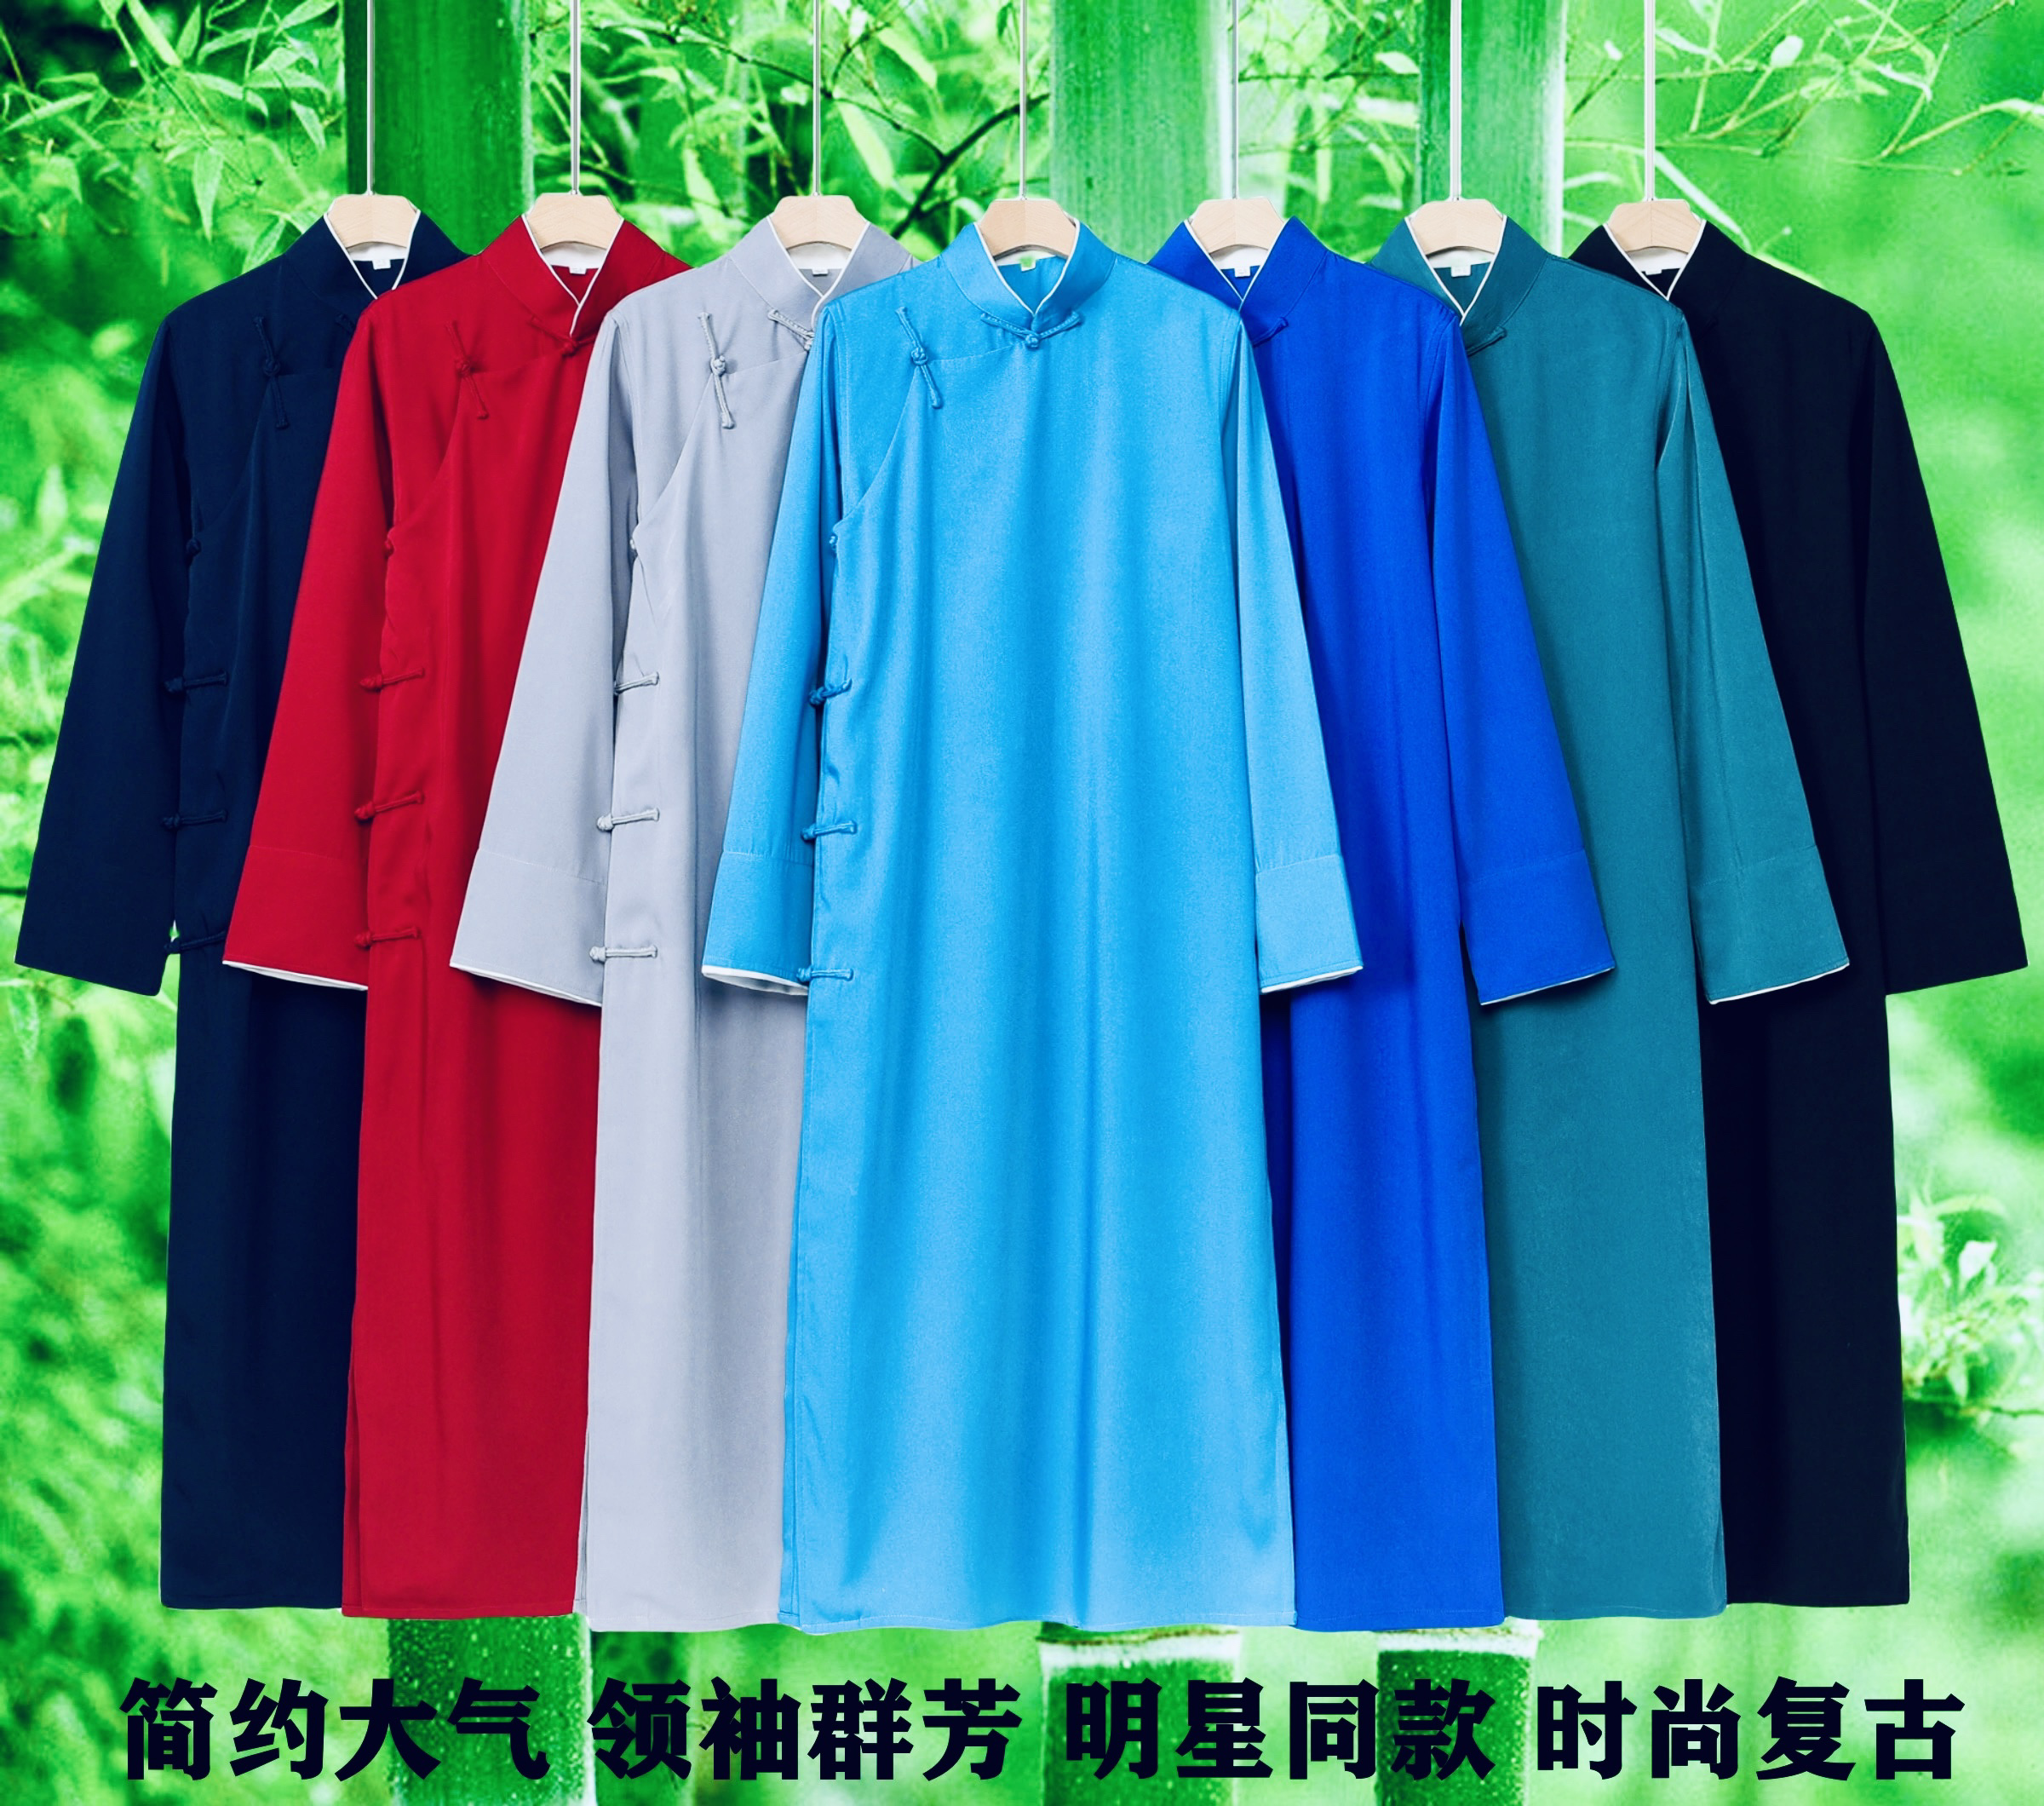 新款中国风长衫相声服相声大褂民国演出服装中式伴郎服马褂长袍子